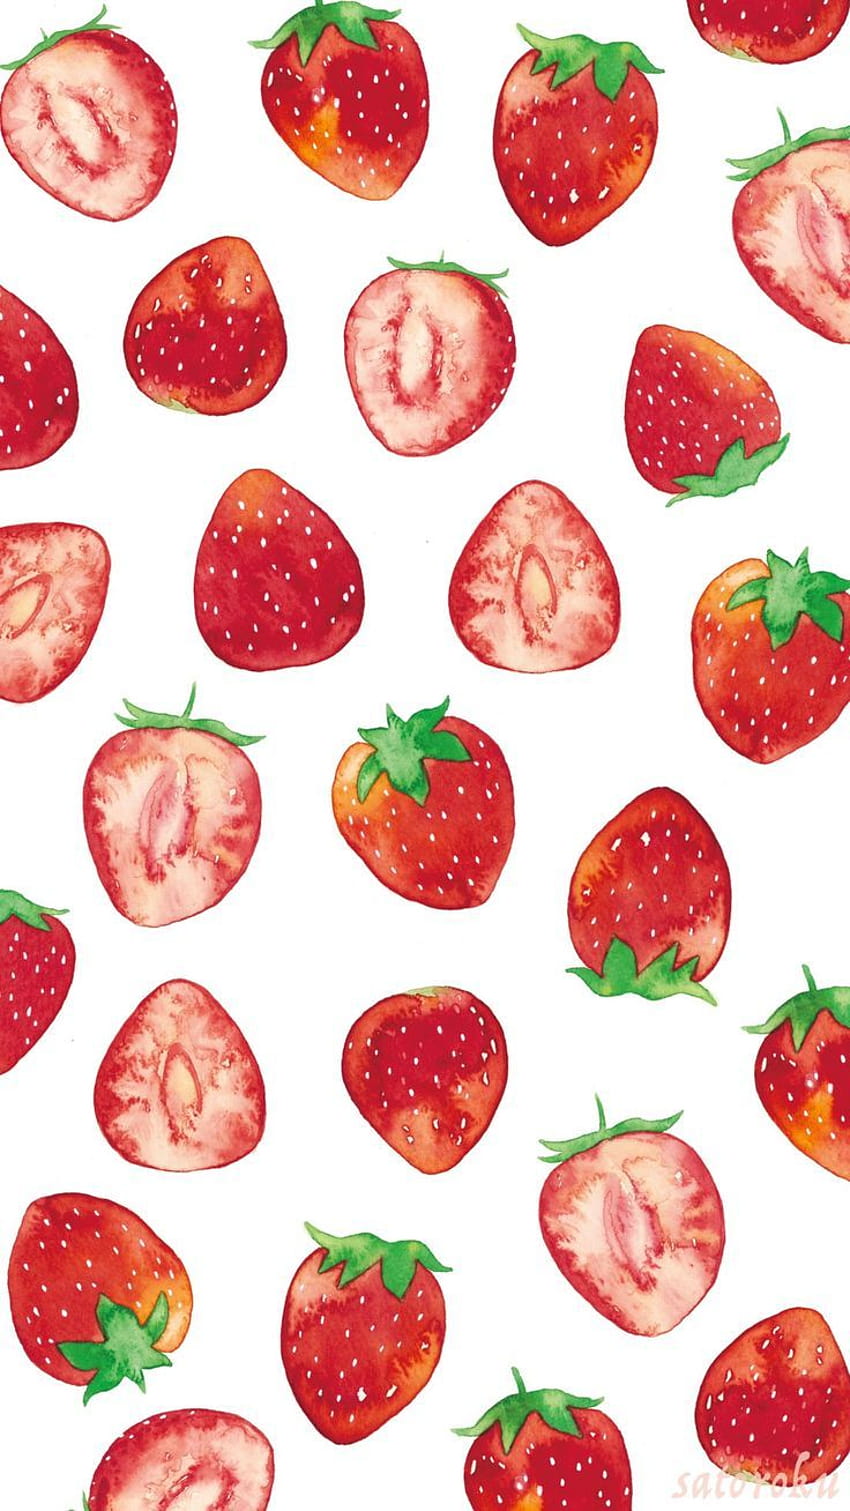 Trang trí điện thoại của bạn với hình nền hoa quả dễ thương sẽ mang lại một cuộc sống tràn đầy năng lượng. Hãy xem những hình fruit phone wallpaper từ đơn giản đến phức tạp để tìm kiếm sản phẩm hoàn hảo cho mình.